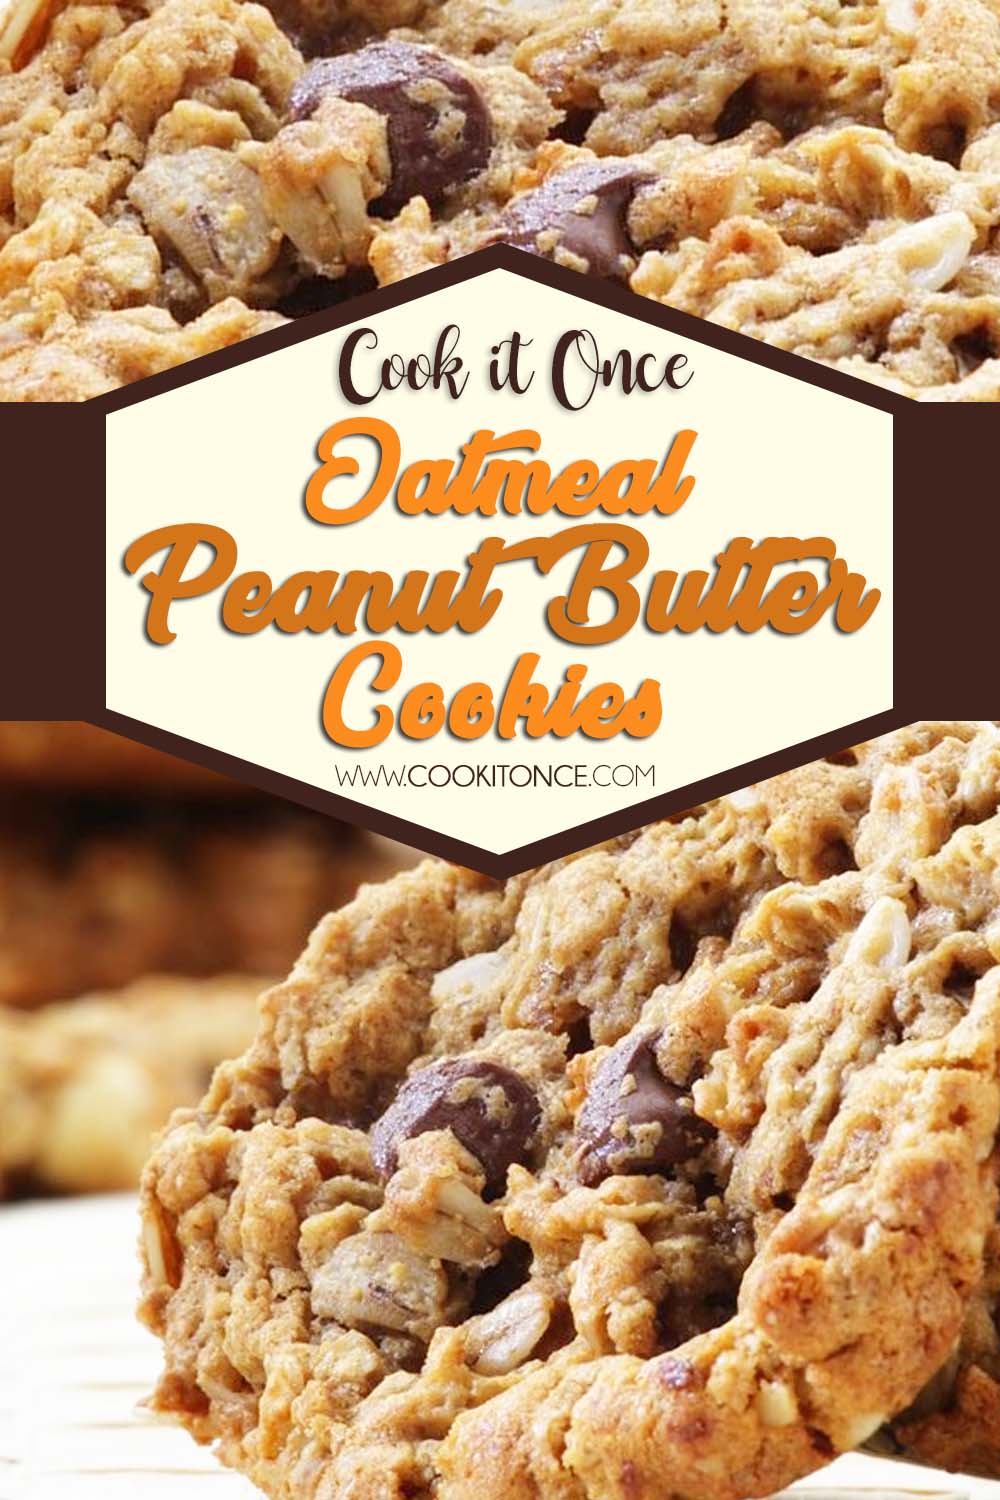 Oatemal Peanut Butter Recipe